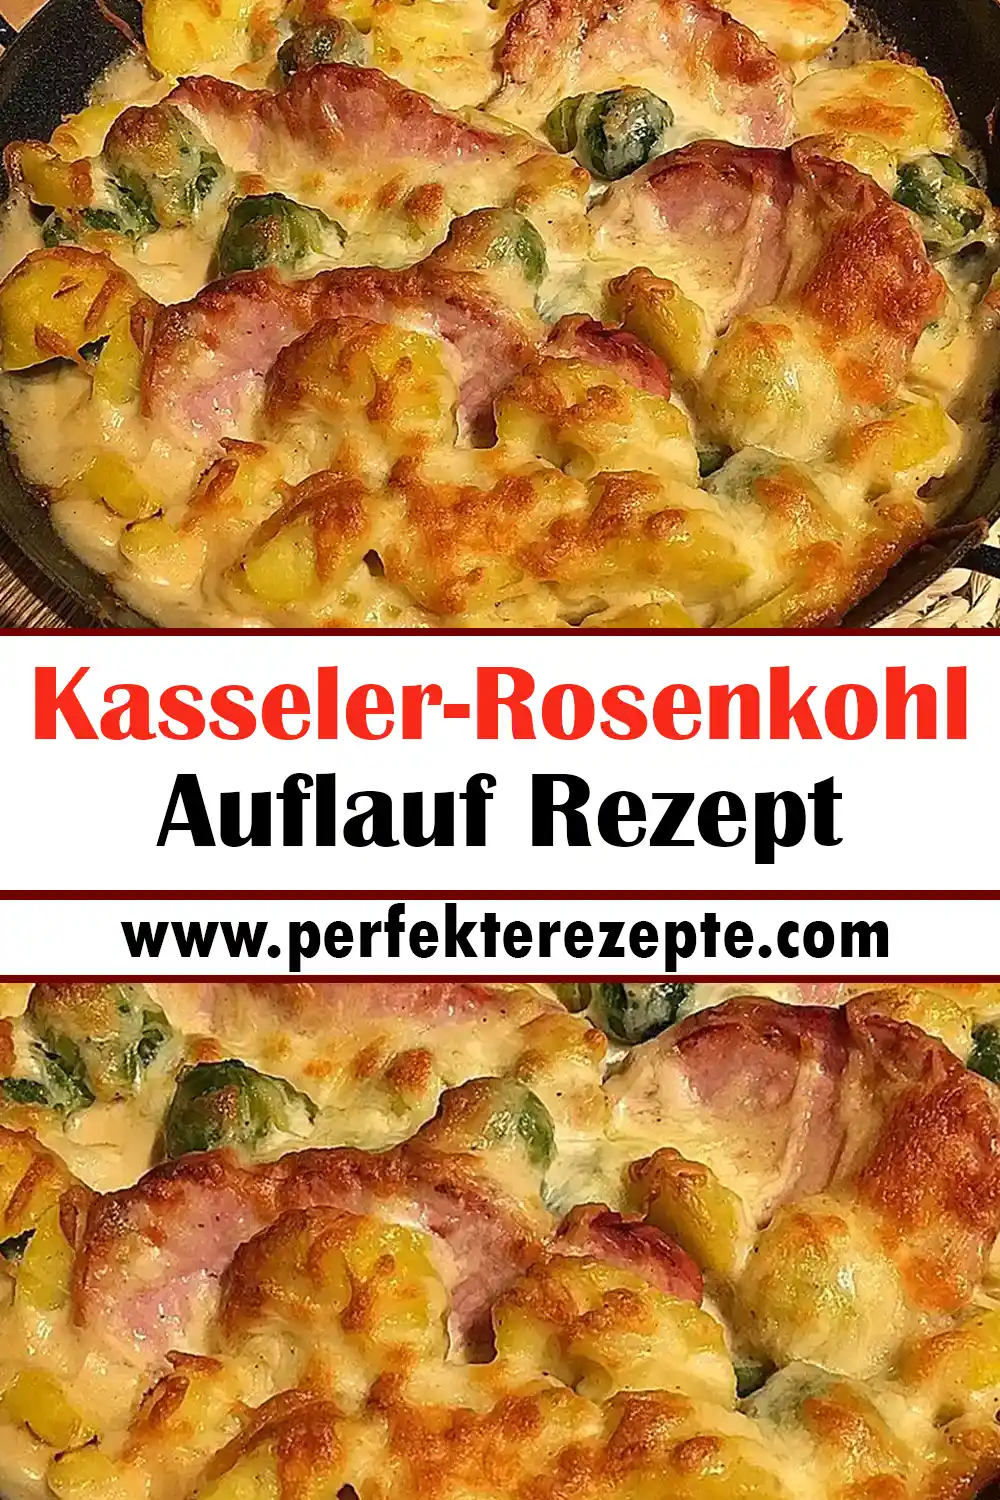 Kasseler-Rosenkohl-Auflauf Rezept